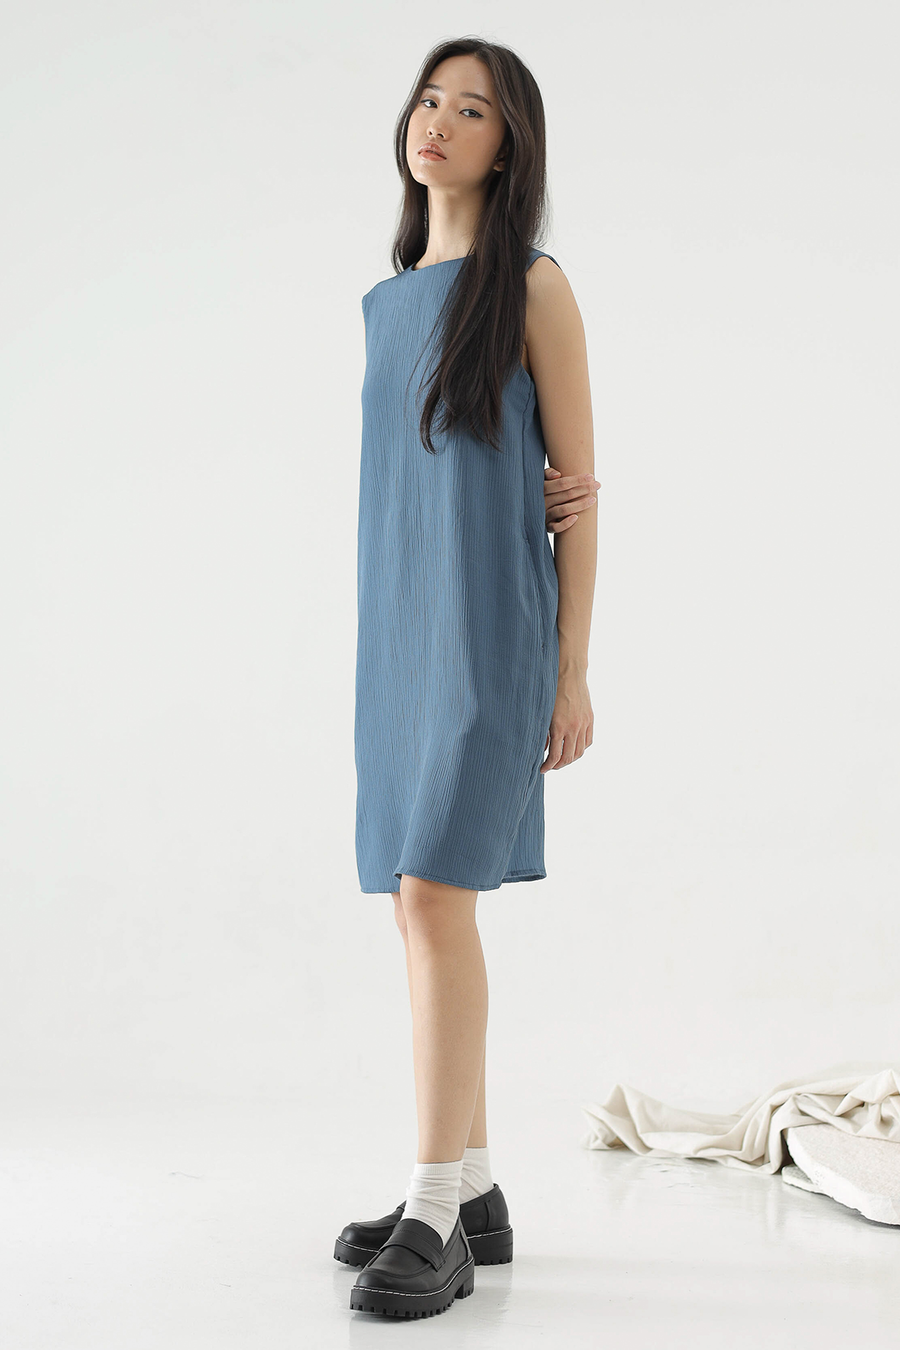 Azure Blue Call Dress